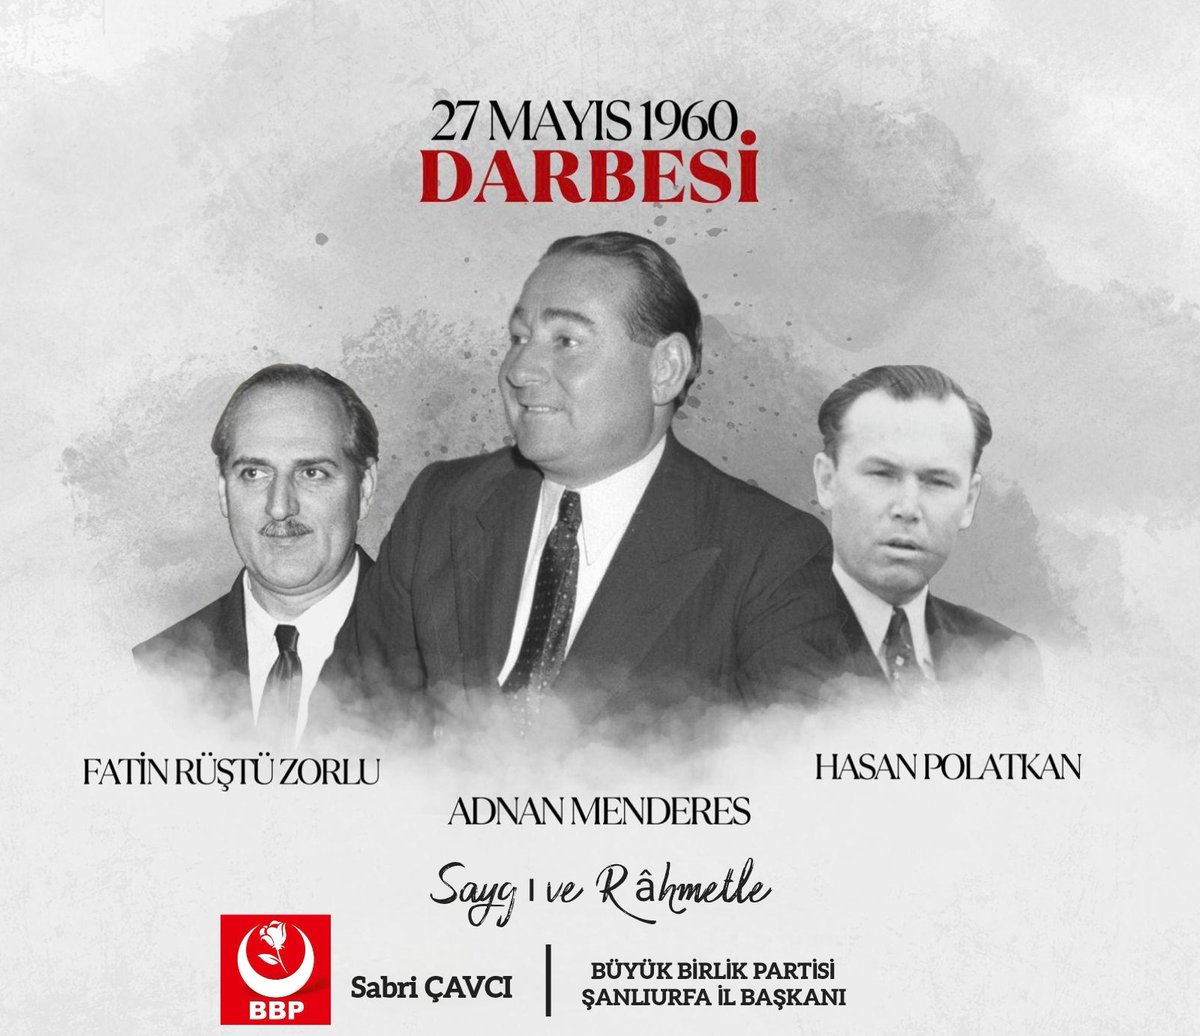 Türk demokrasi tarihinin kara lekesi
#27Mayıs1960 darbesinin 64. Yılında idam edilen başbakanımız sn #AdnanMenderes Dışisleri bakanı sn #FatinRüştüZorlu ve Maliye bakanı sn #HasanPolatkan'ı Saygı ve Râhmetle anıyoruz.

#BBP #Şanlıurfa
#BüyükBirlikPartisi